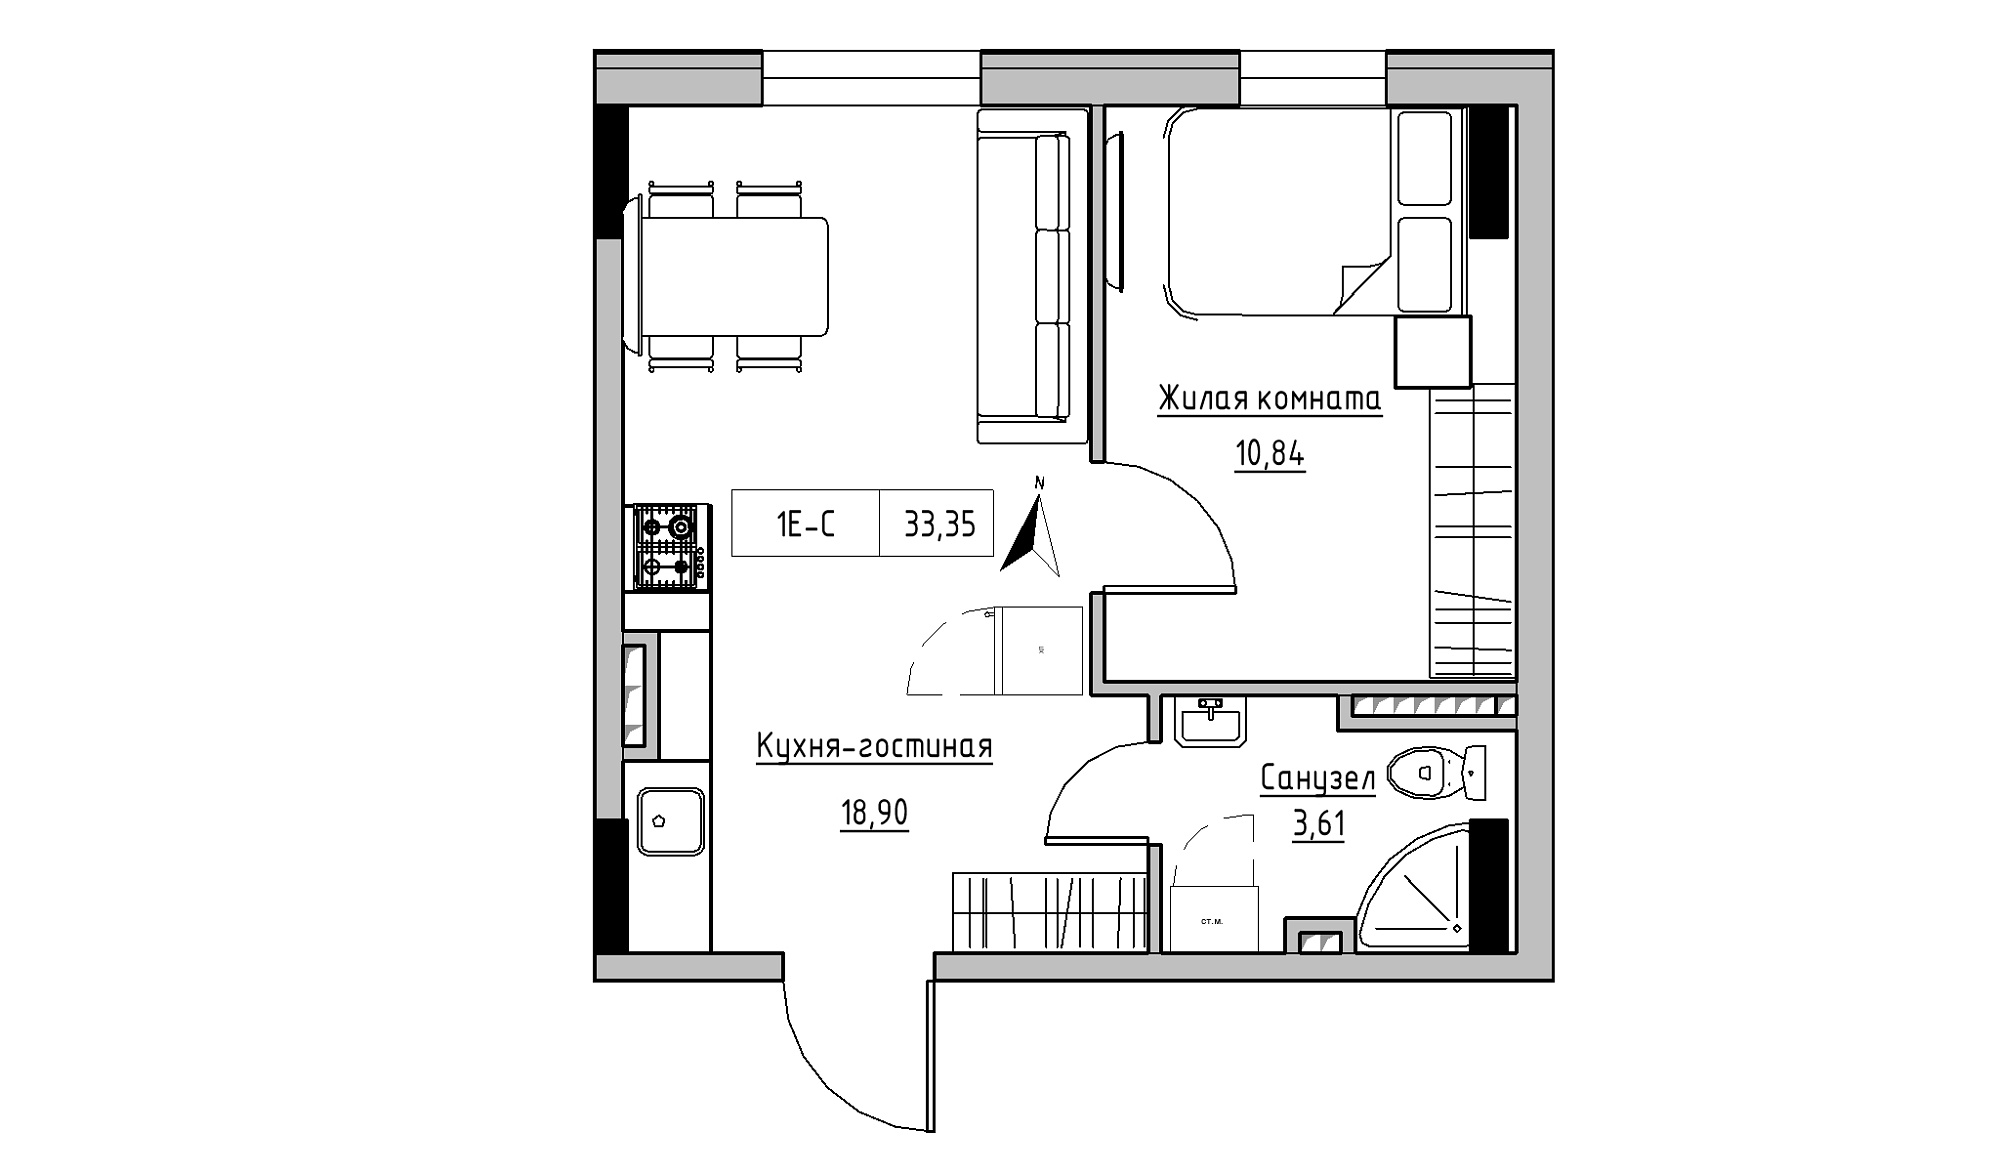 Планування 1-к квартира площею 33.35м2, KS-025-02/0010.